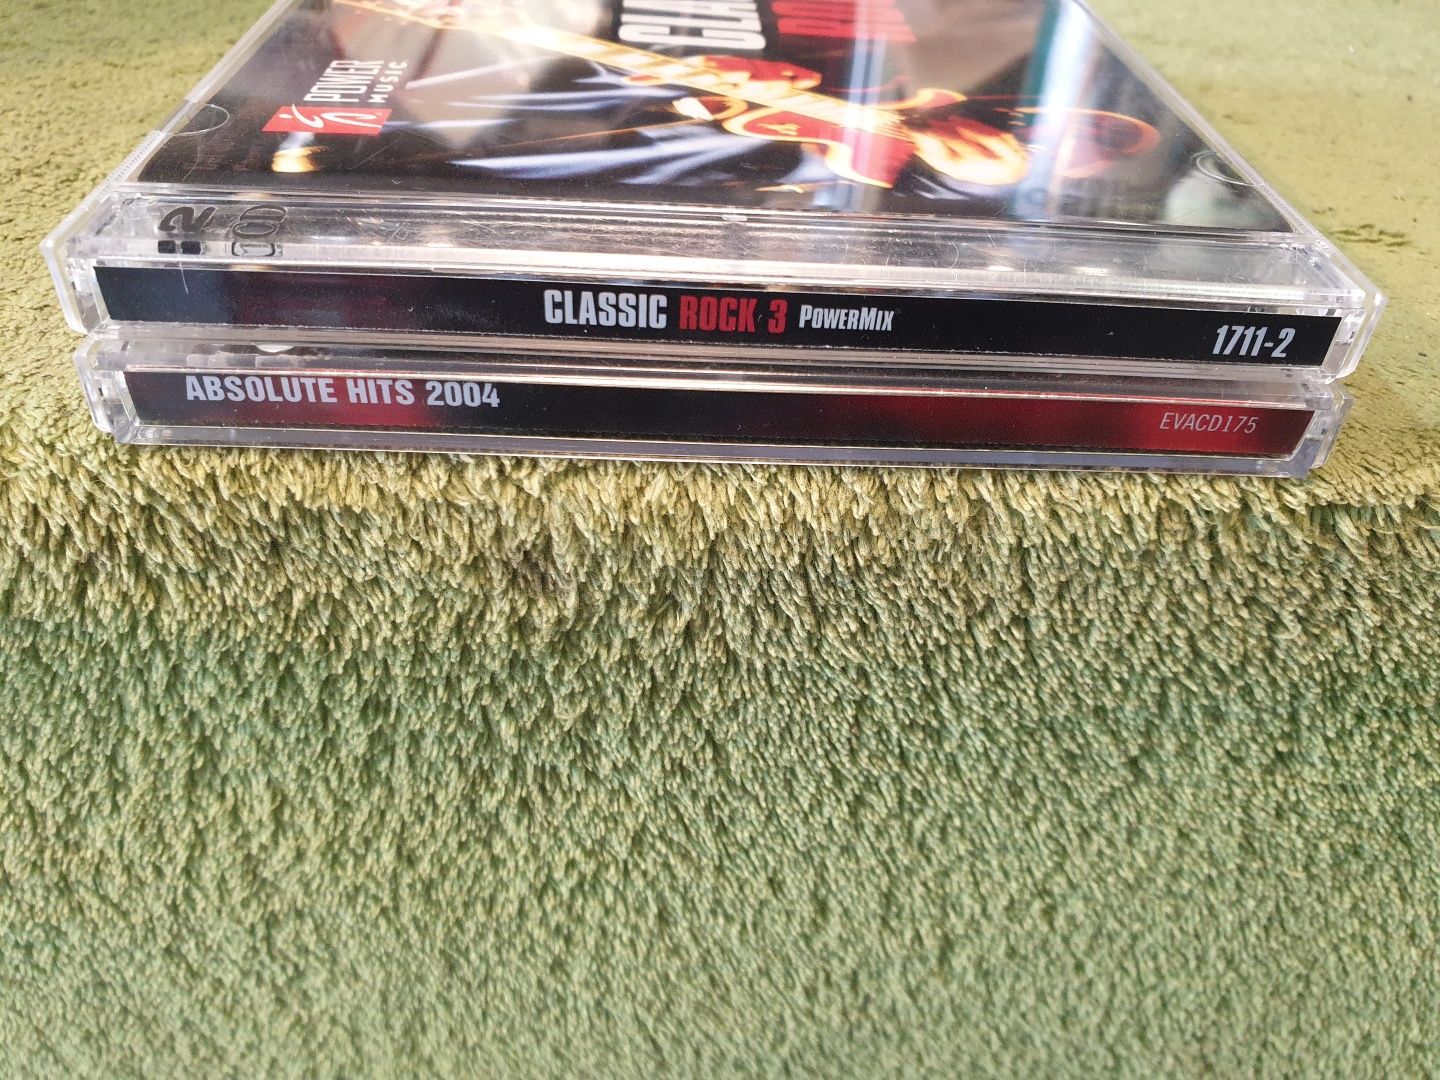 2 podwójne płyty CD różni wykonawcy.